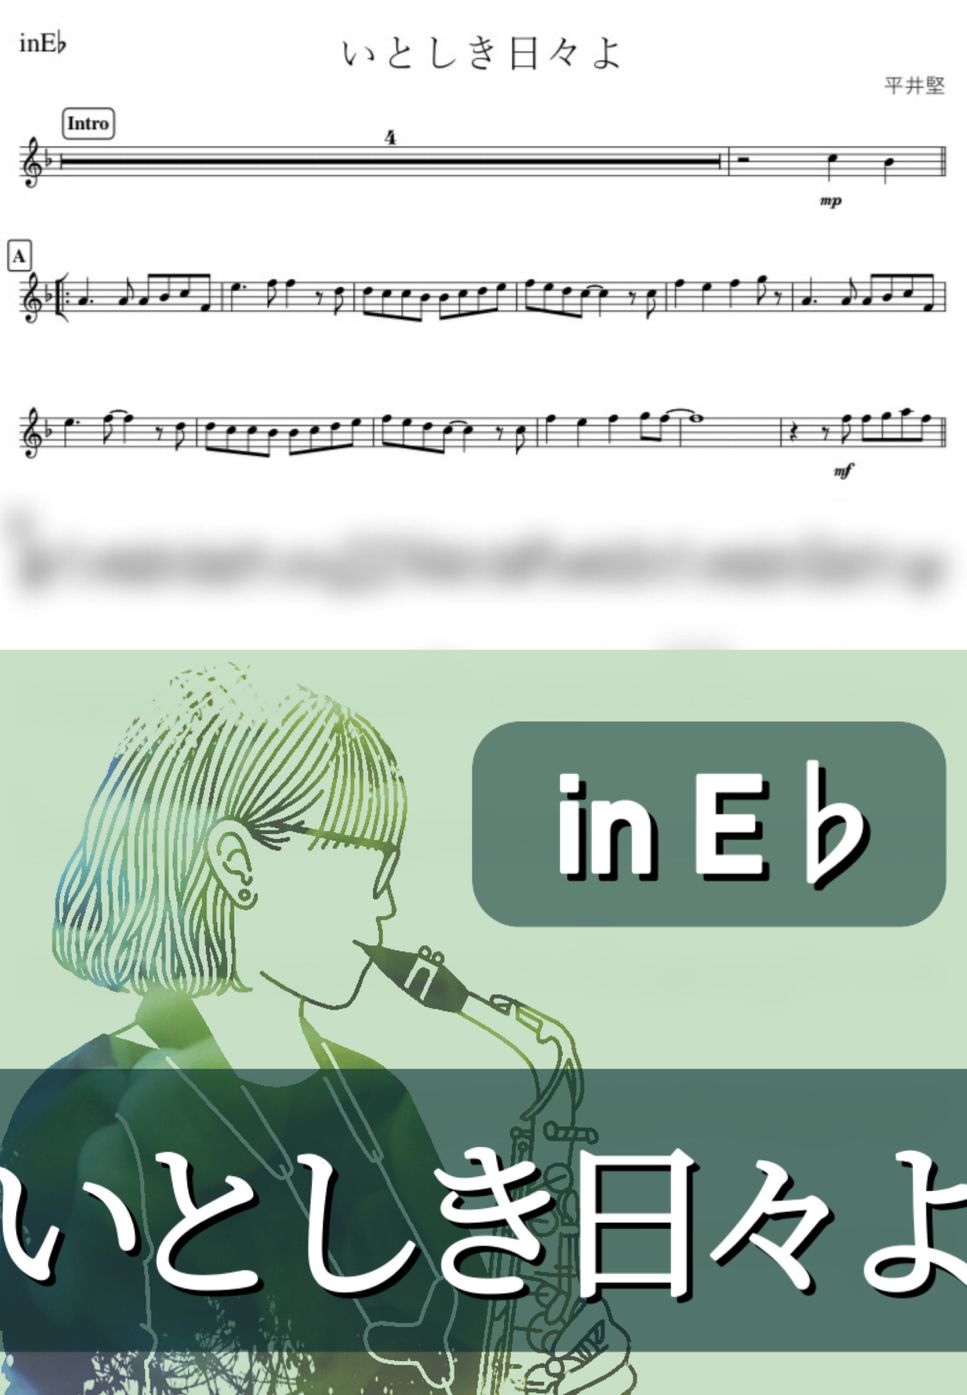 平井堅 - いとしき日々よ (E♭) by kanamusic